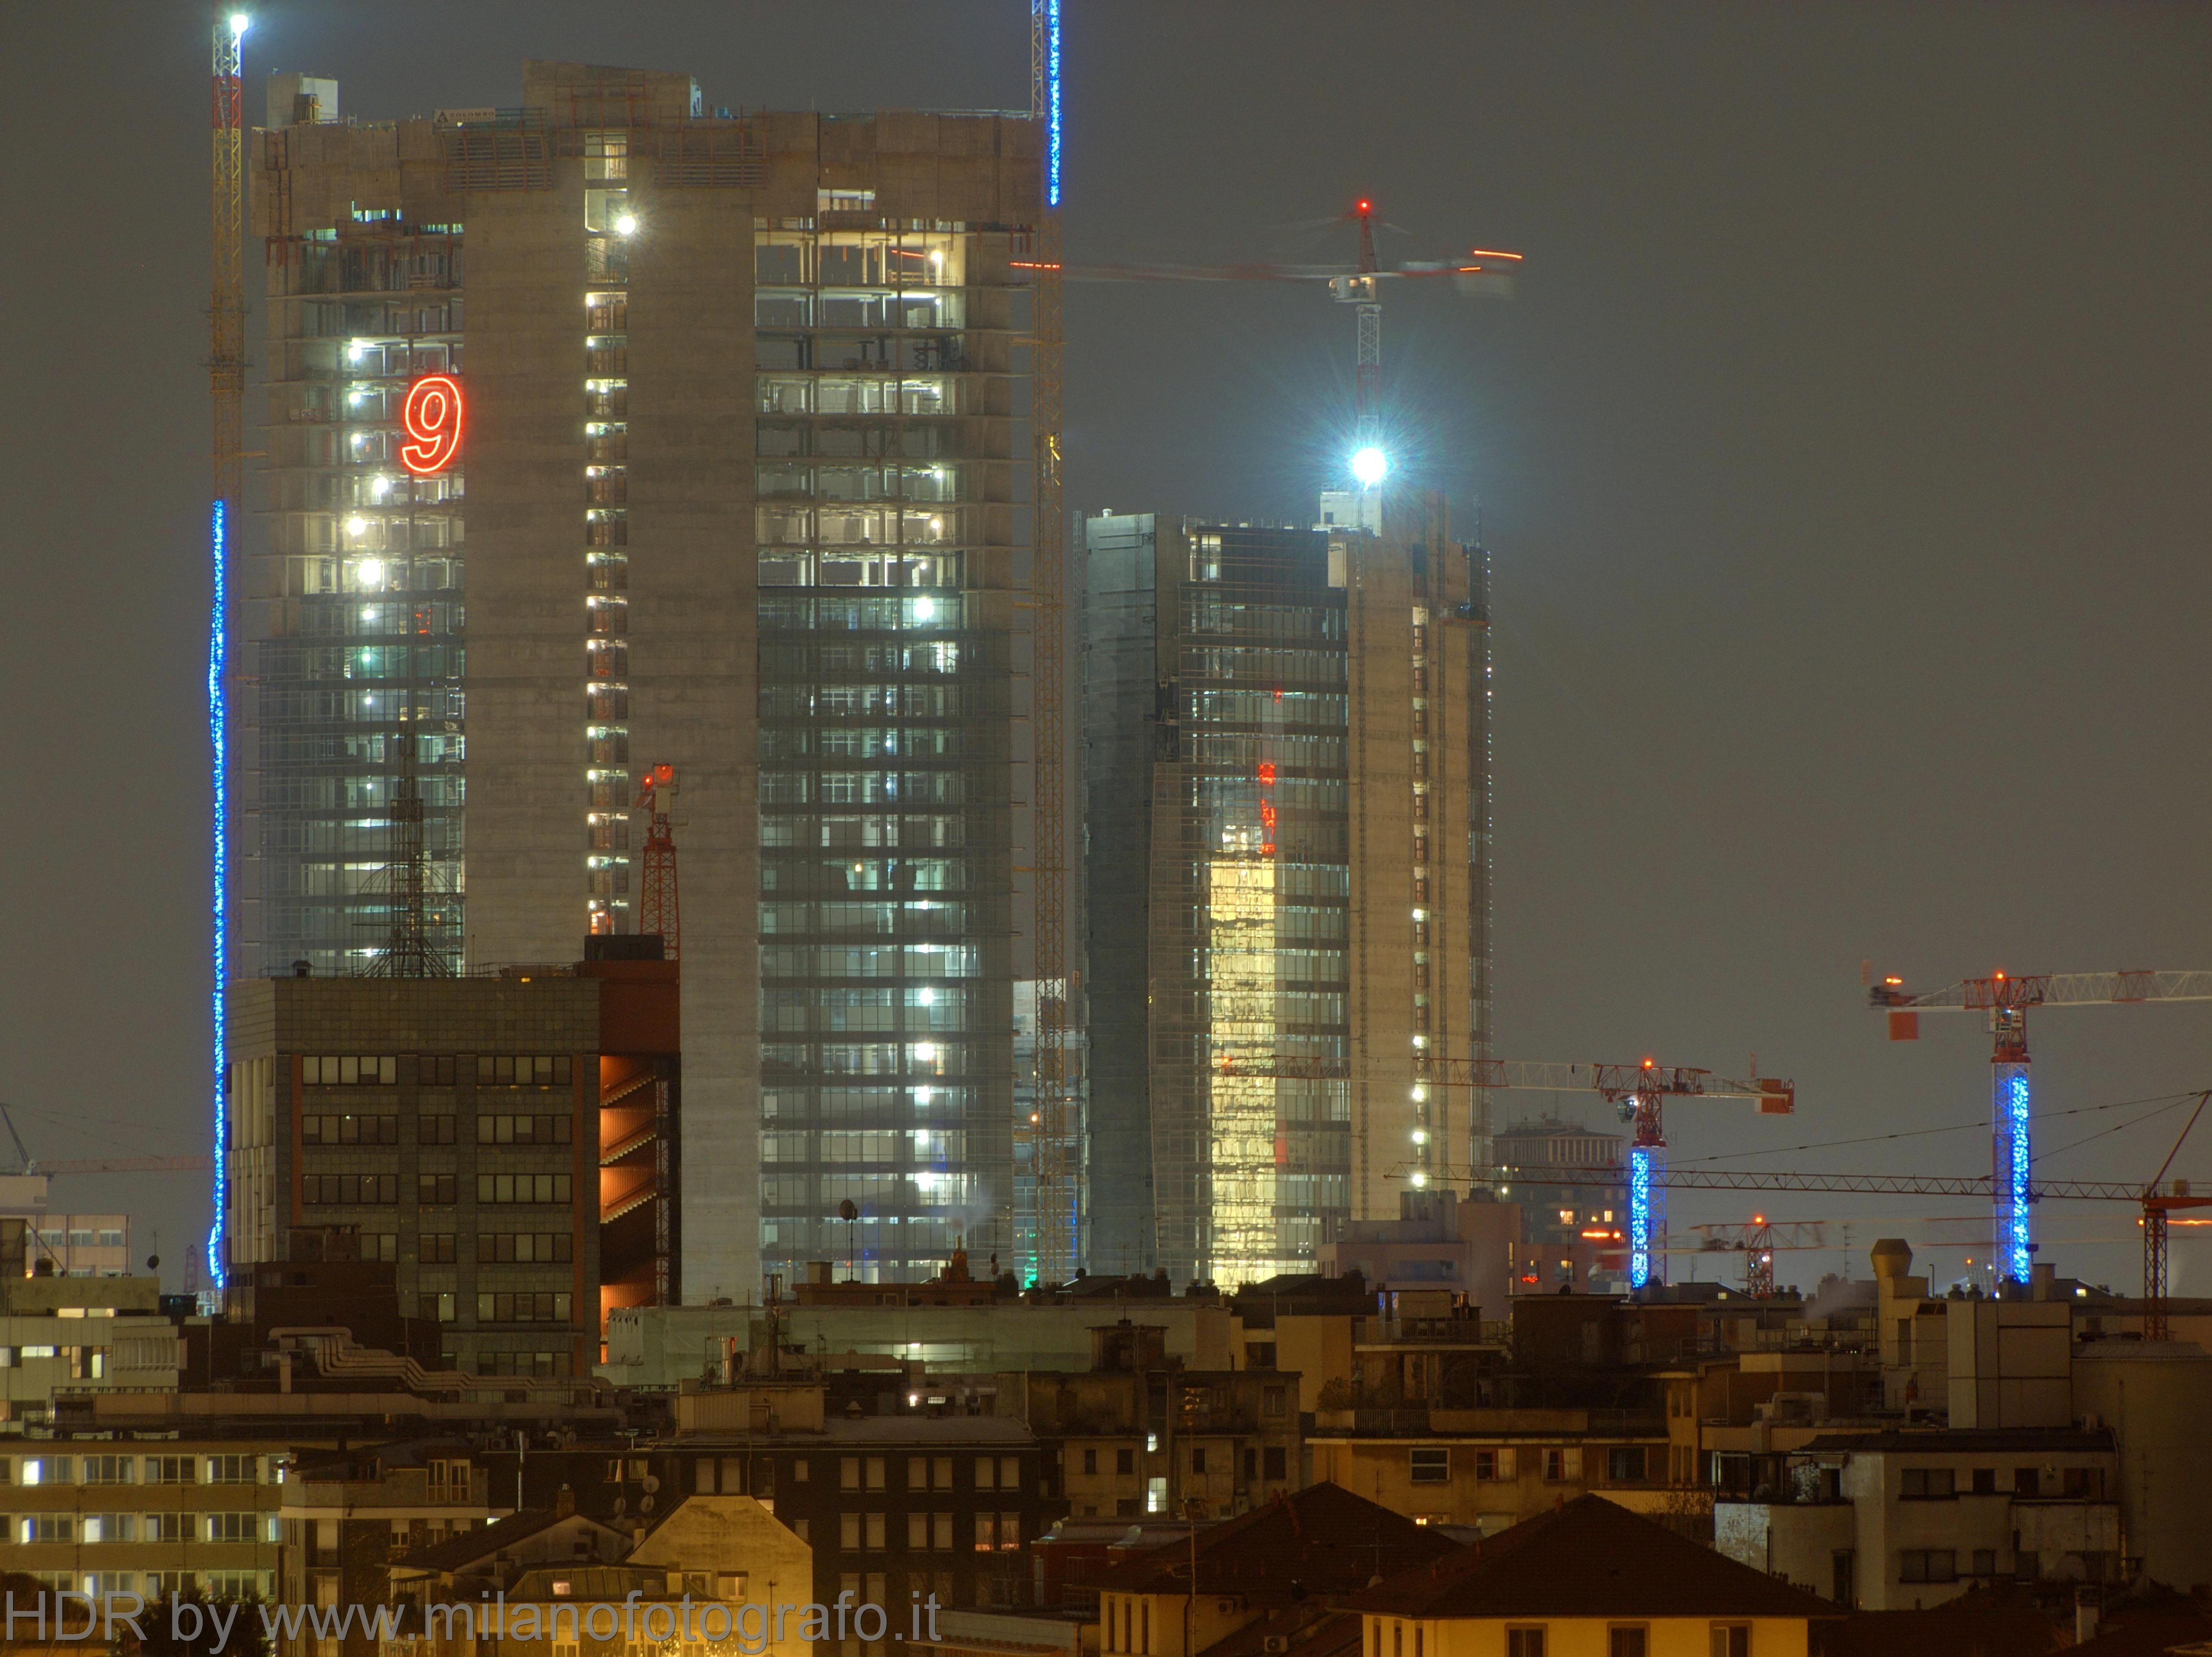 Milano: I nuovi grattacieli in zona Garibaldi Varesine - Milano